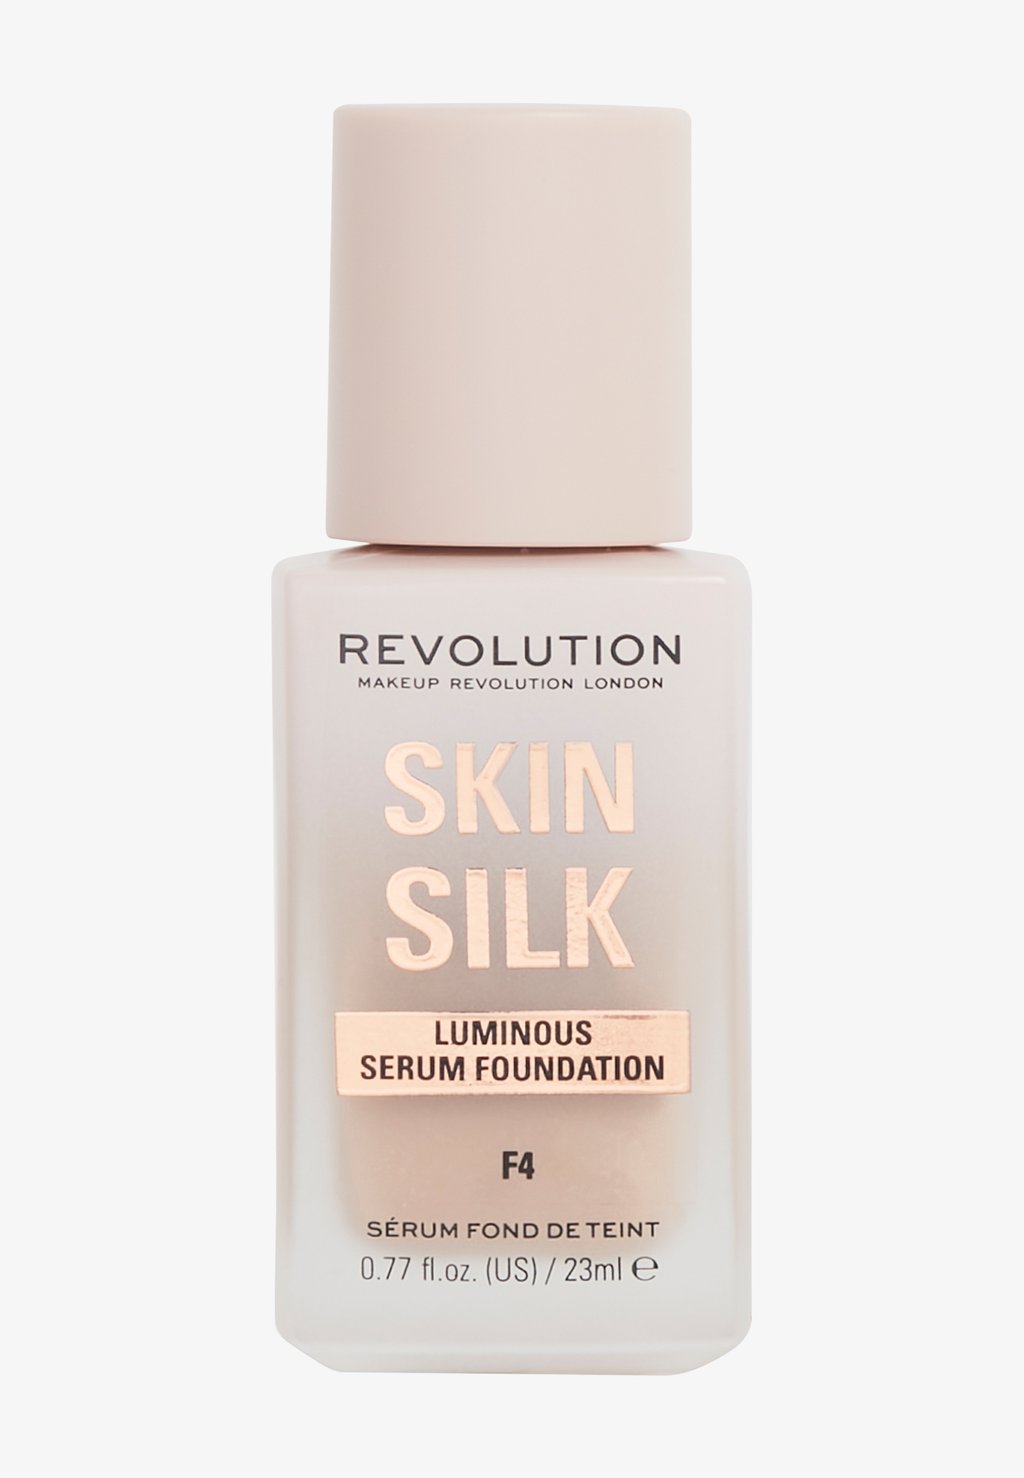 Тональный крем Revolution Skin Silk Serum Foundation Makeup Revolution, цвет f4